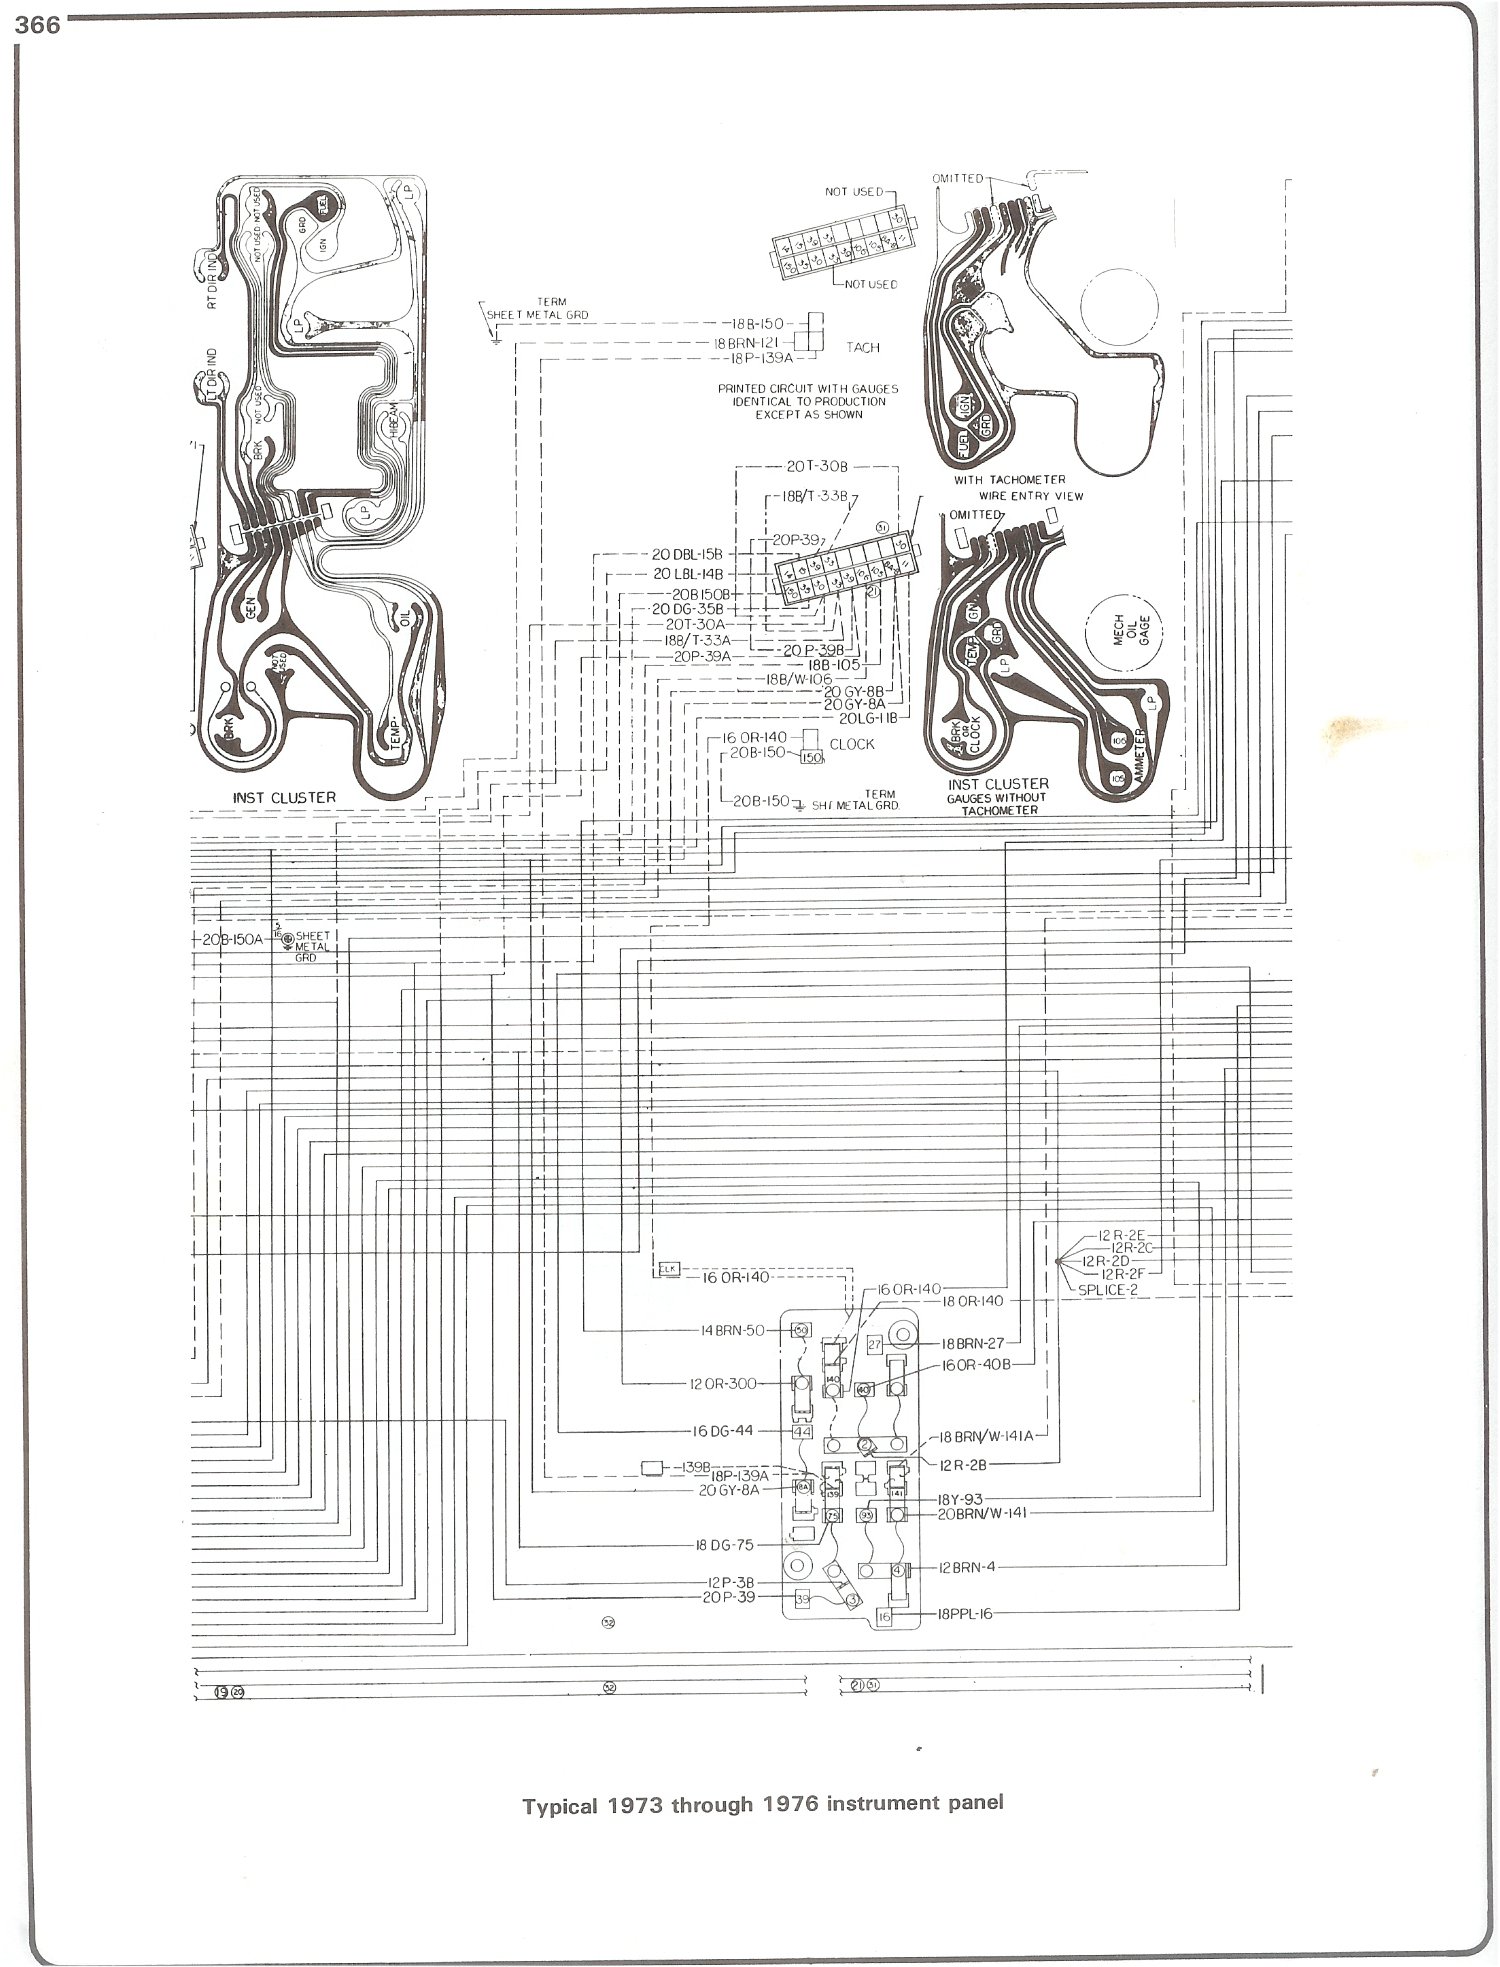 1973 Chevy Truck Hydrulic Trailer Brake Controller Wiring Diagram from schematron.org